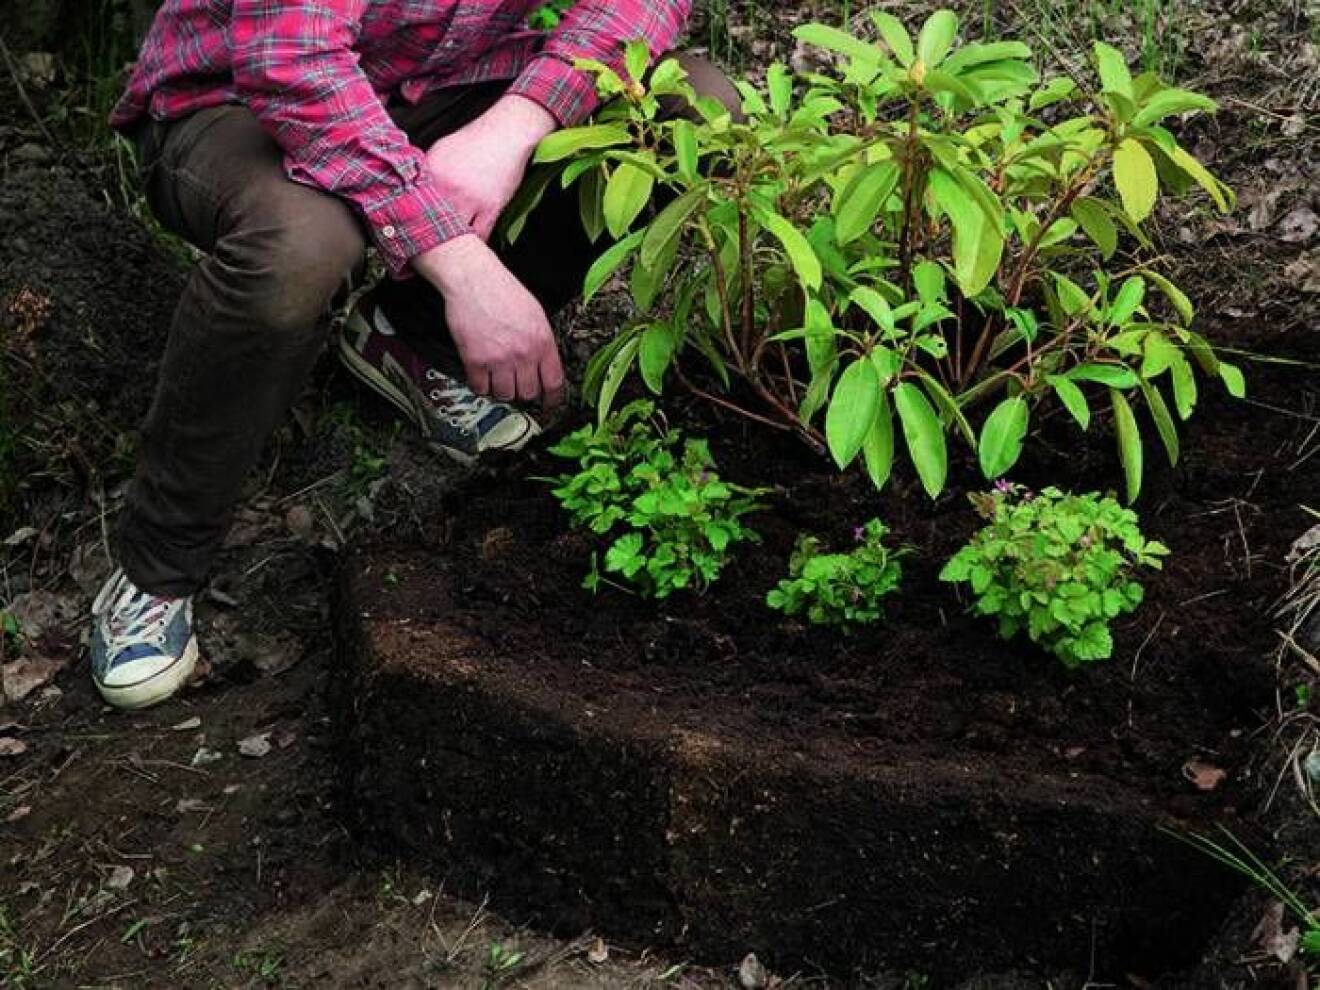 Plantera gärna några marktäckande surjordsväxter, de hjälper till att bevara fukten i jorden och det ser snyggt ut.